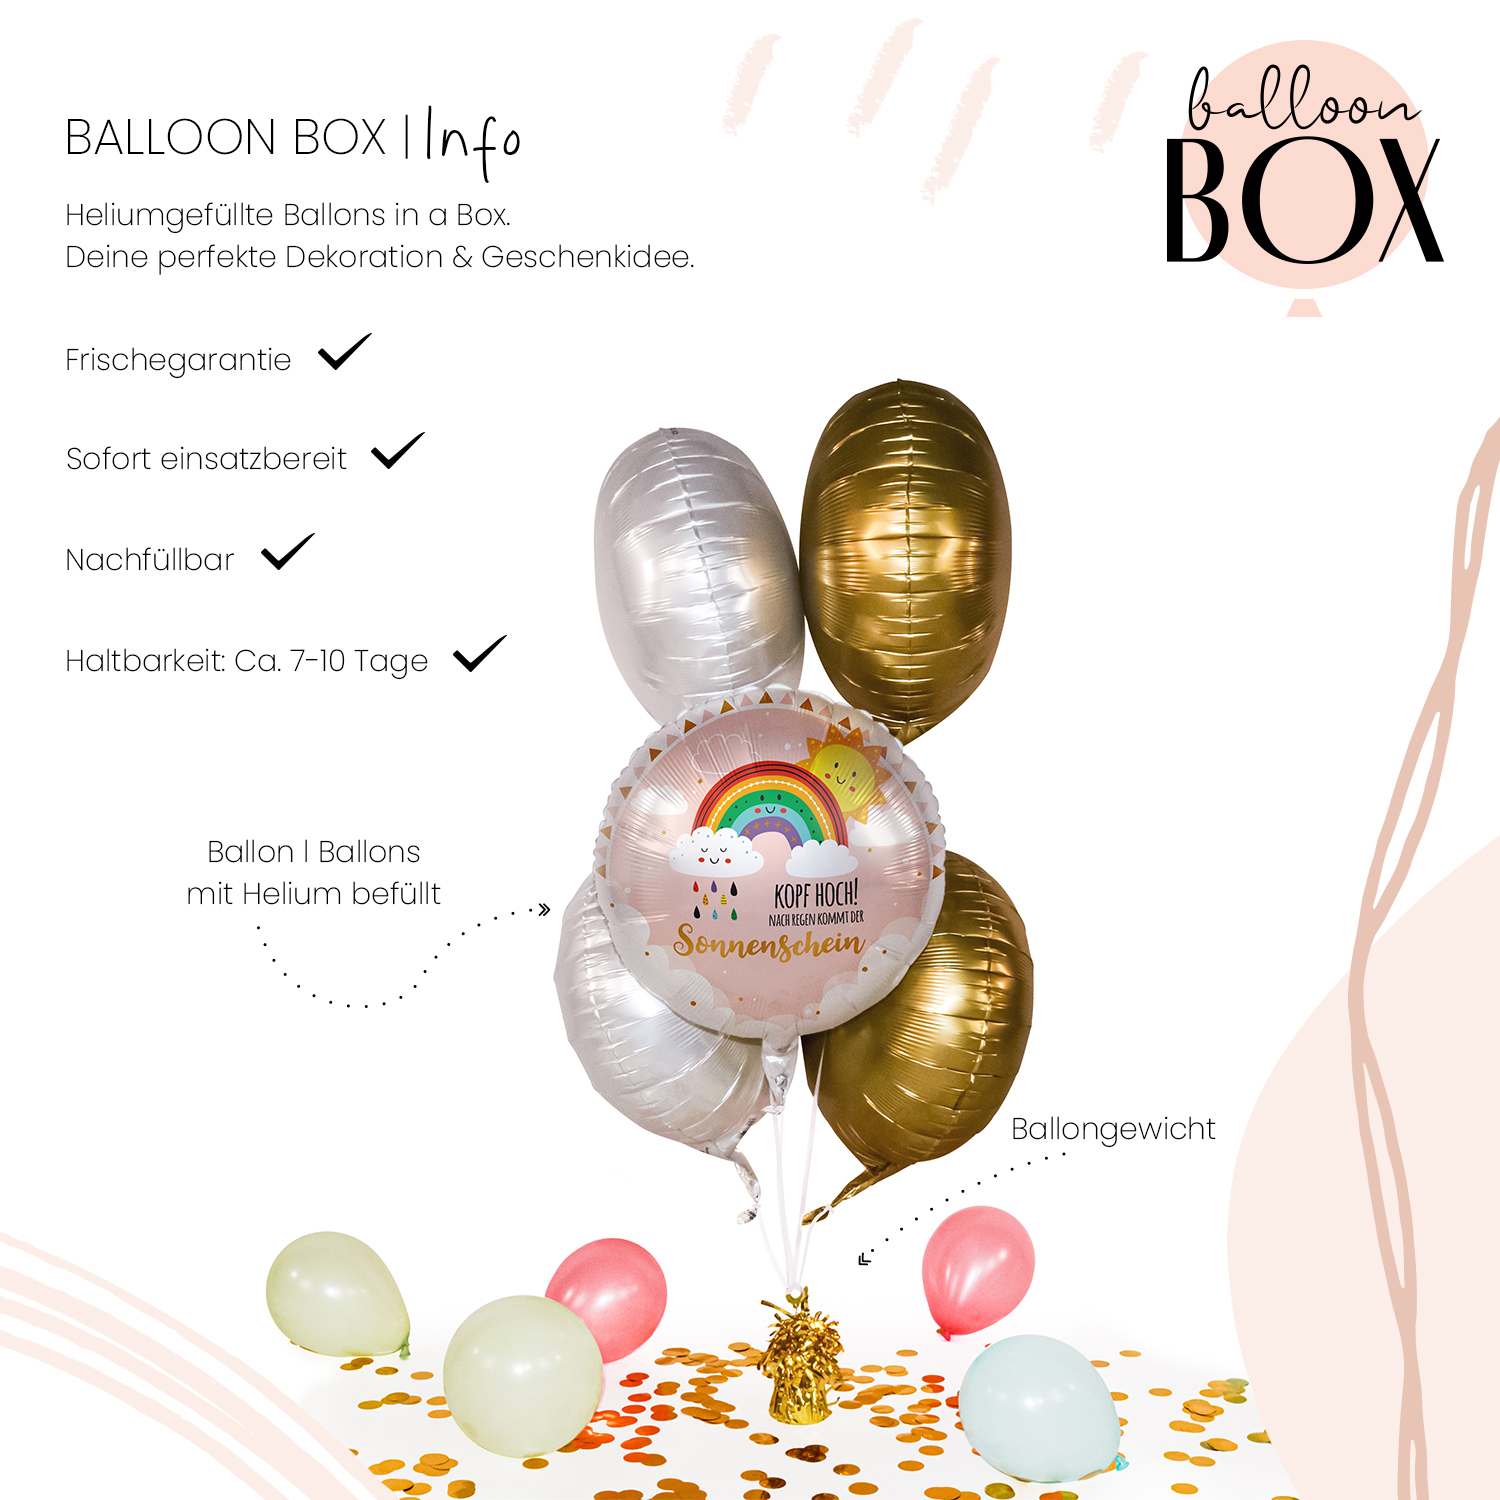 Heliumballon in a Box - Kopf Hoch Sonnenschein